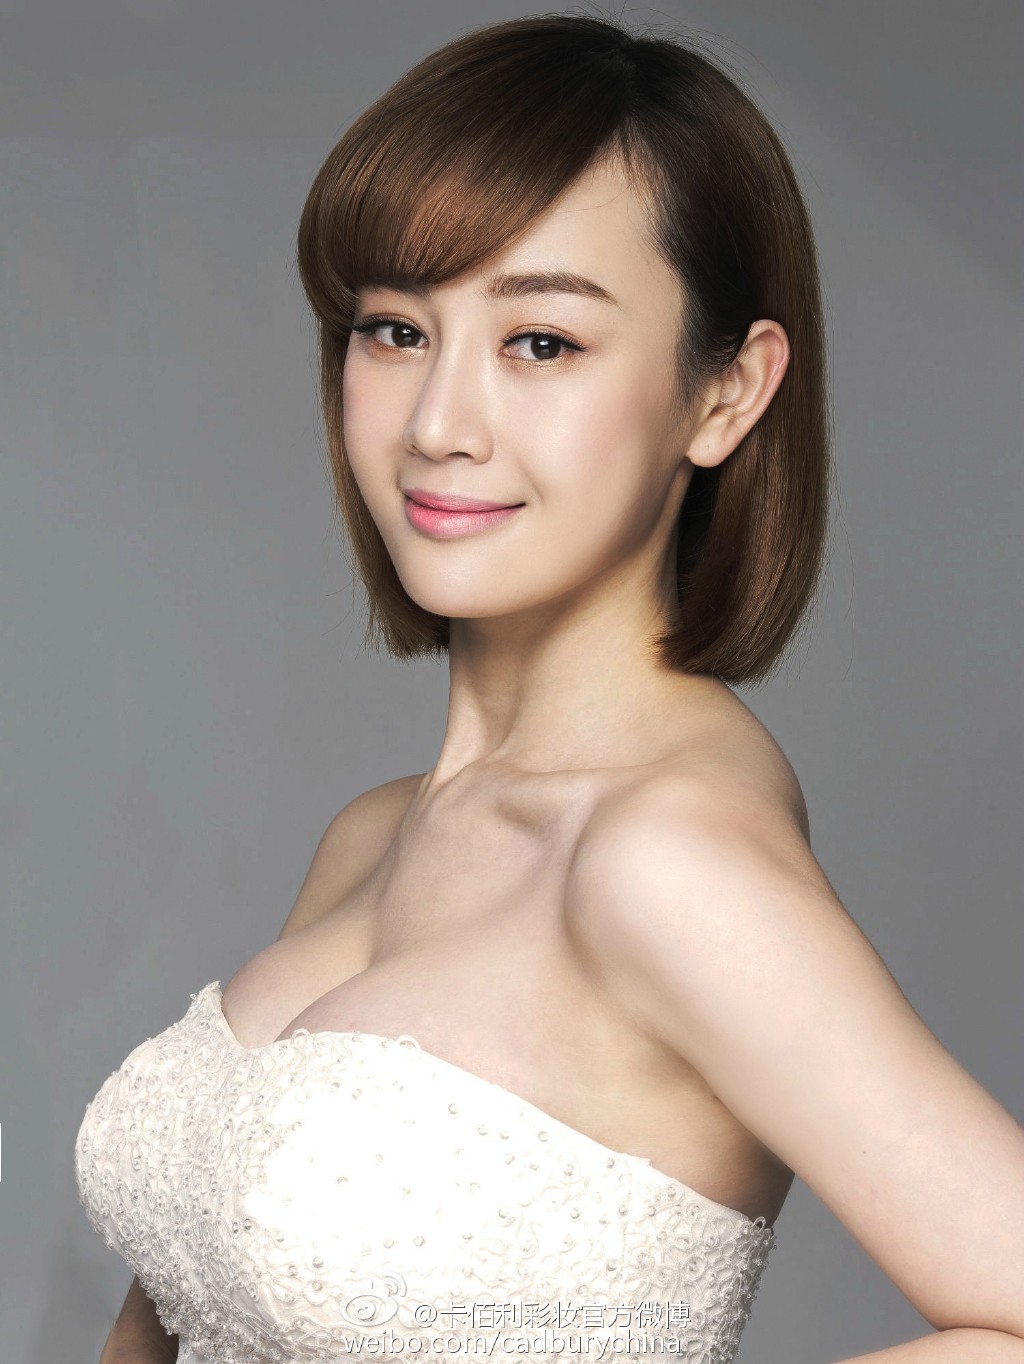 Улыбка Чжан Мэнъэр, придающая ей неповторимый шарм и очарование